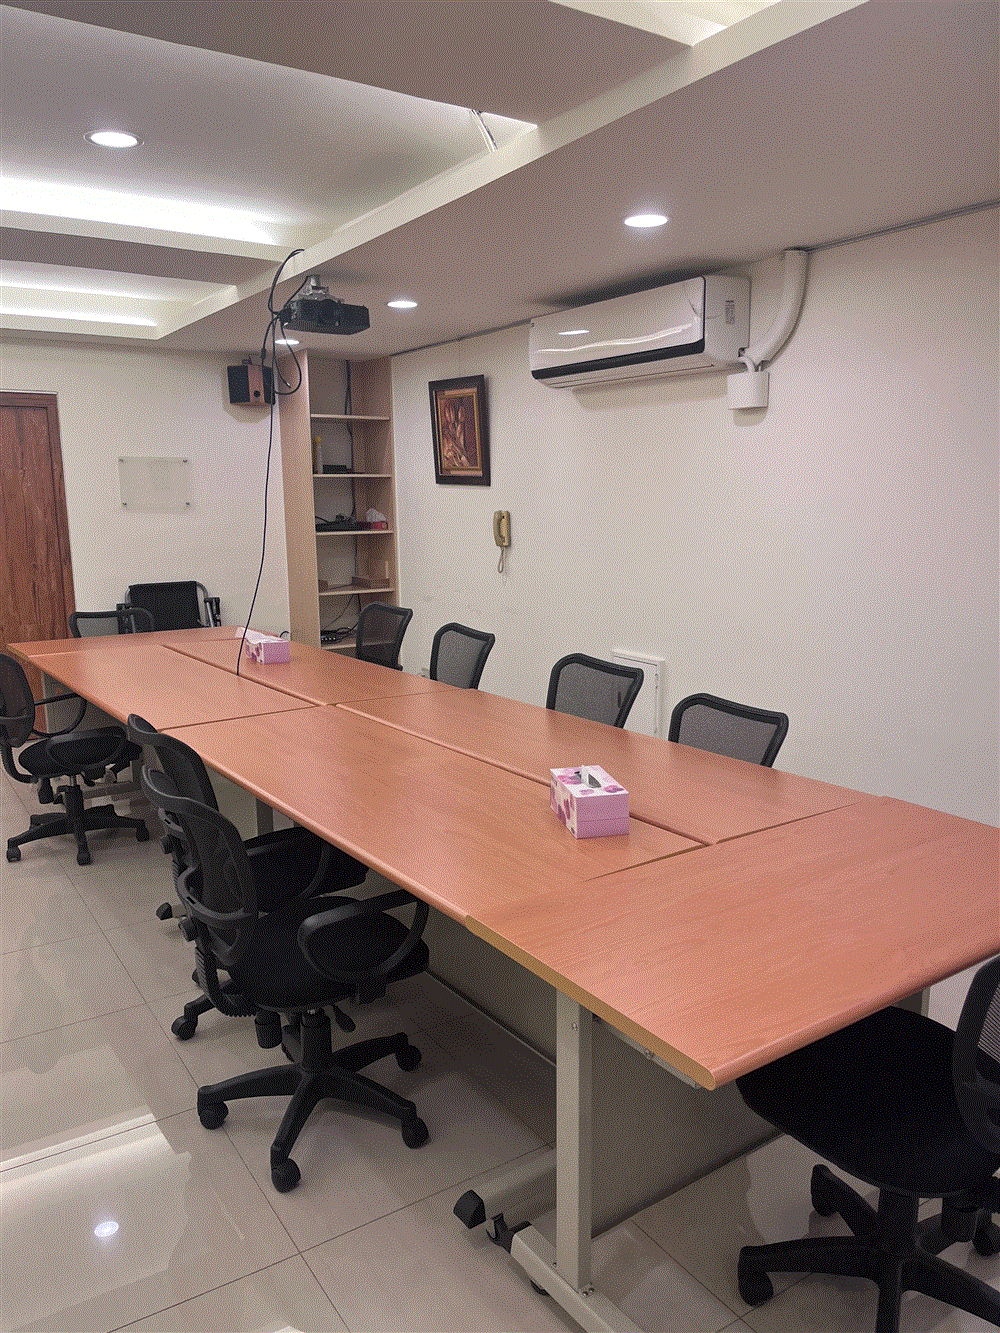 高雄會議室出租 6-14人 小型商務會議室推薦介紹,Koffice高雄共享辦公室